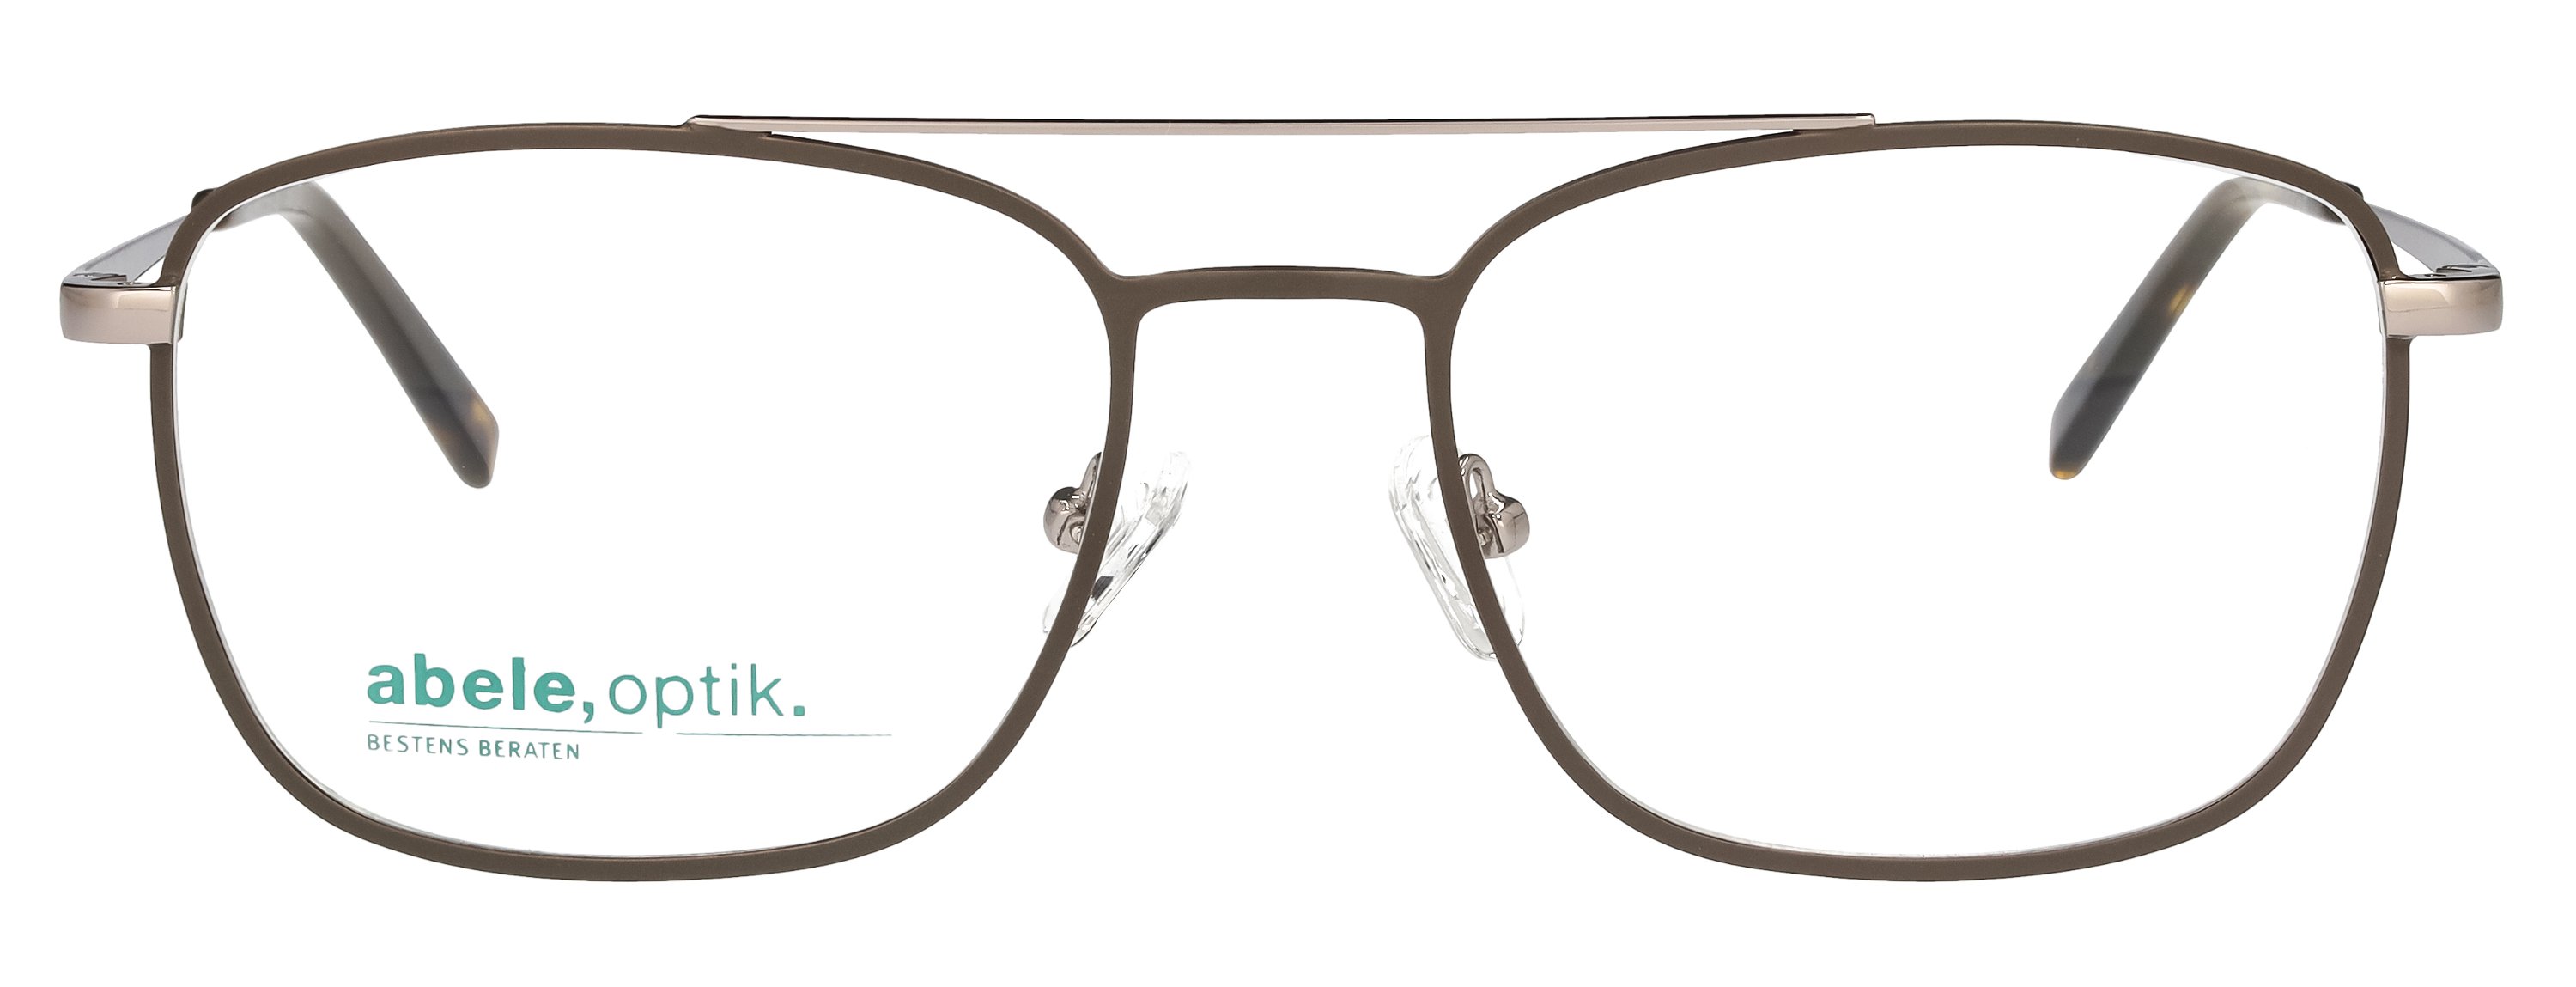 abele optik Brille 148261 für Herren in grau matt silber